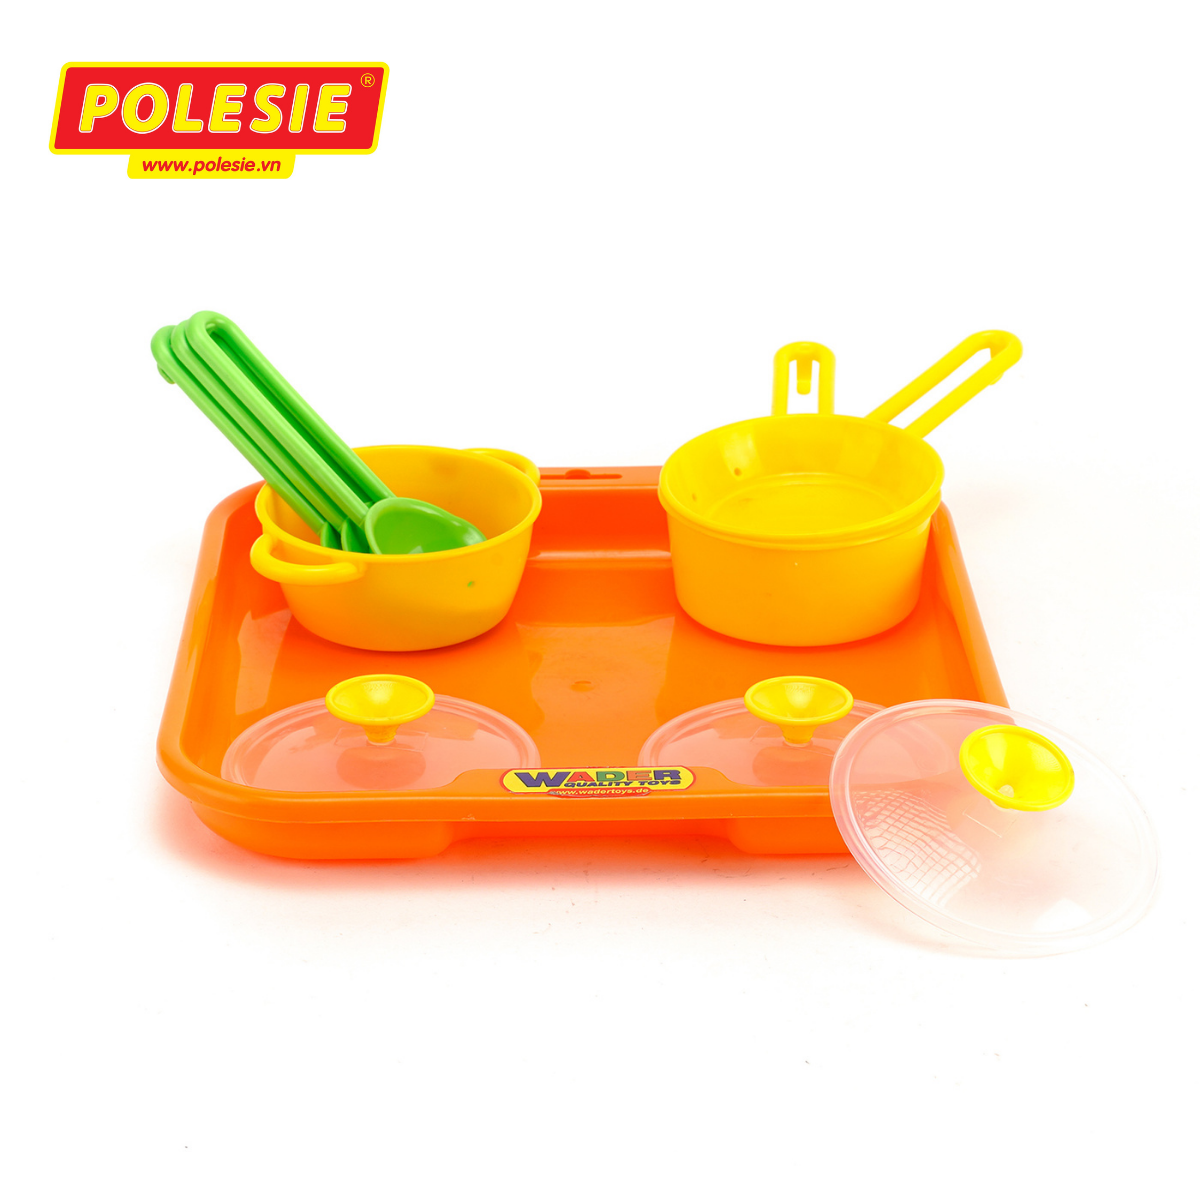 Bộ đồ chơi nấu ăn cho bé Trice Polesie 40732 - Hàng chính hãng nhập khẩu châu âu